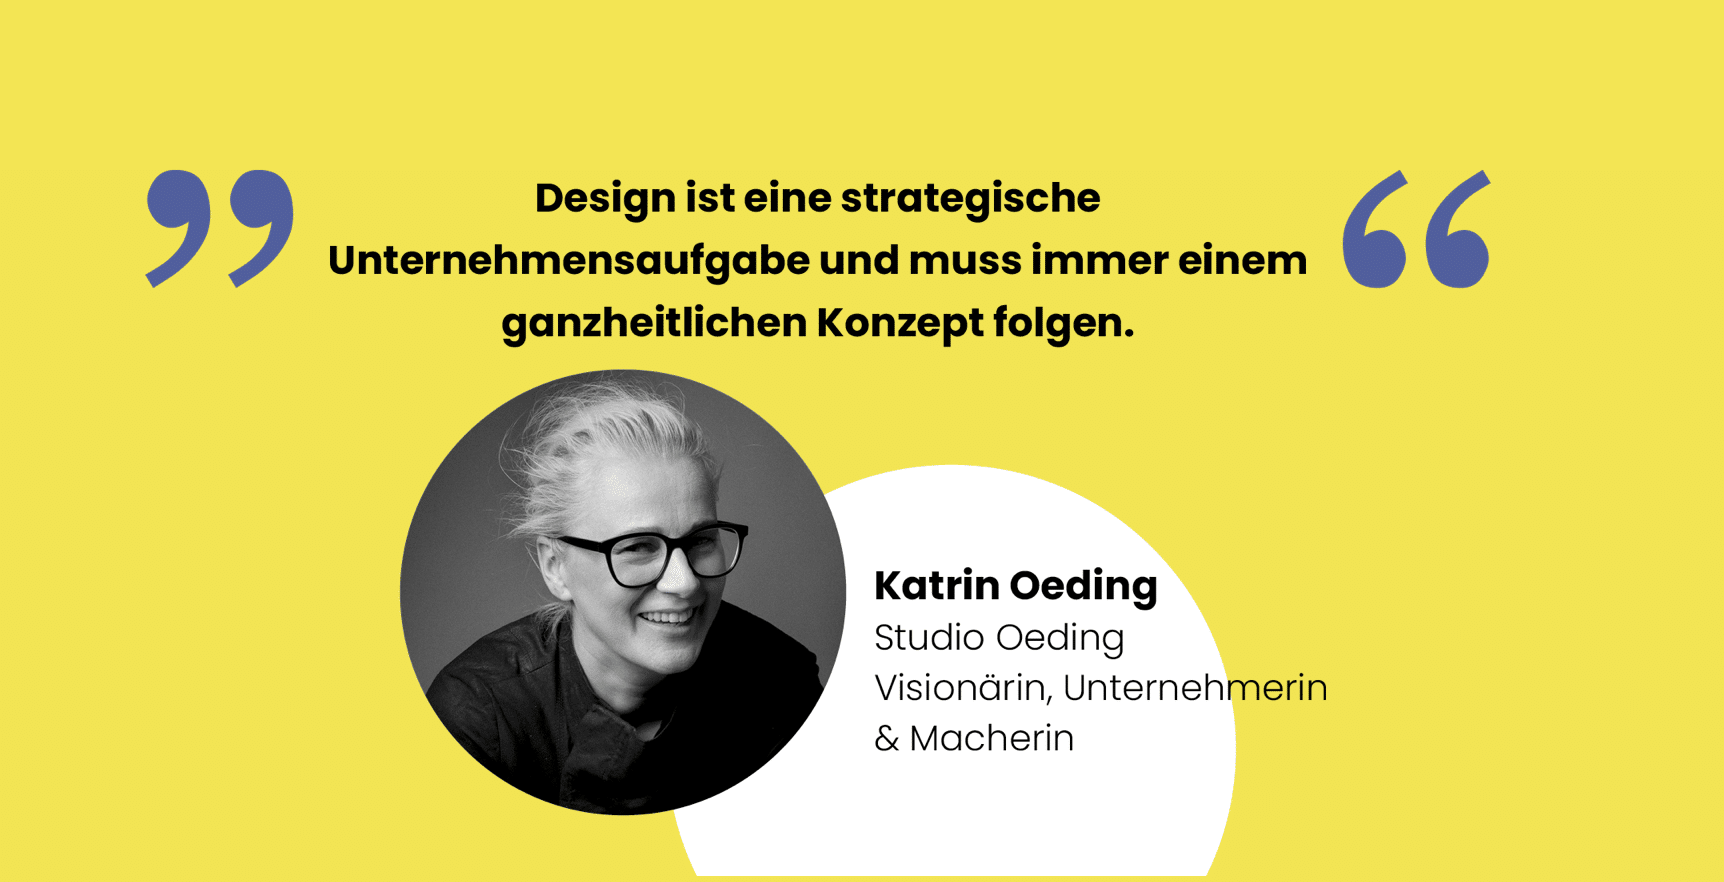 Katrin Oeding ist bei der neuen Designkonferenz in Hamburg dabei